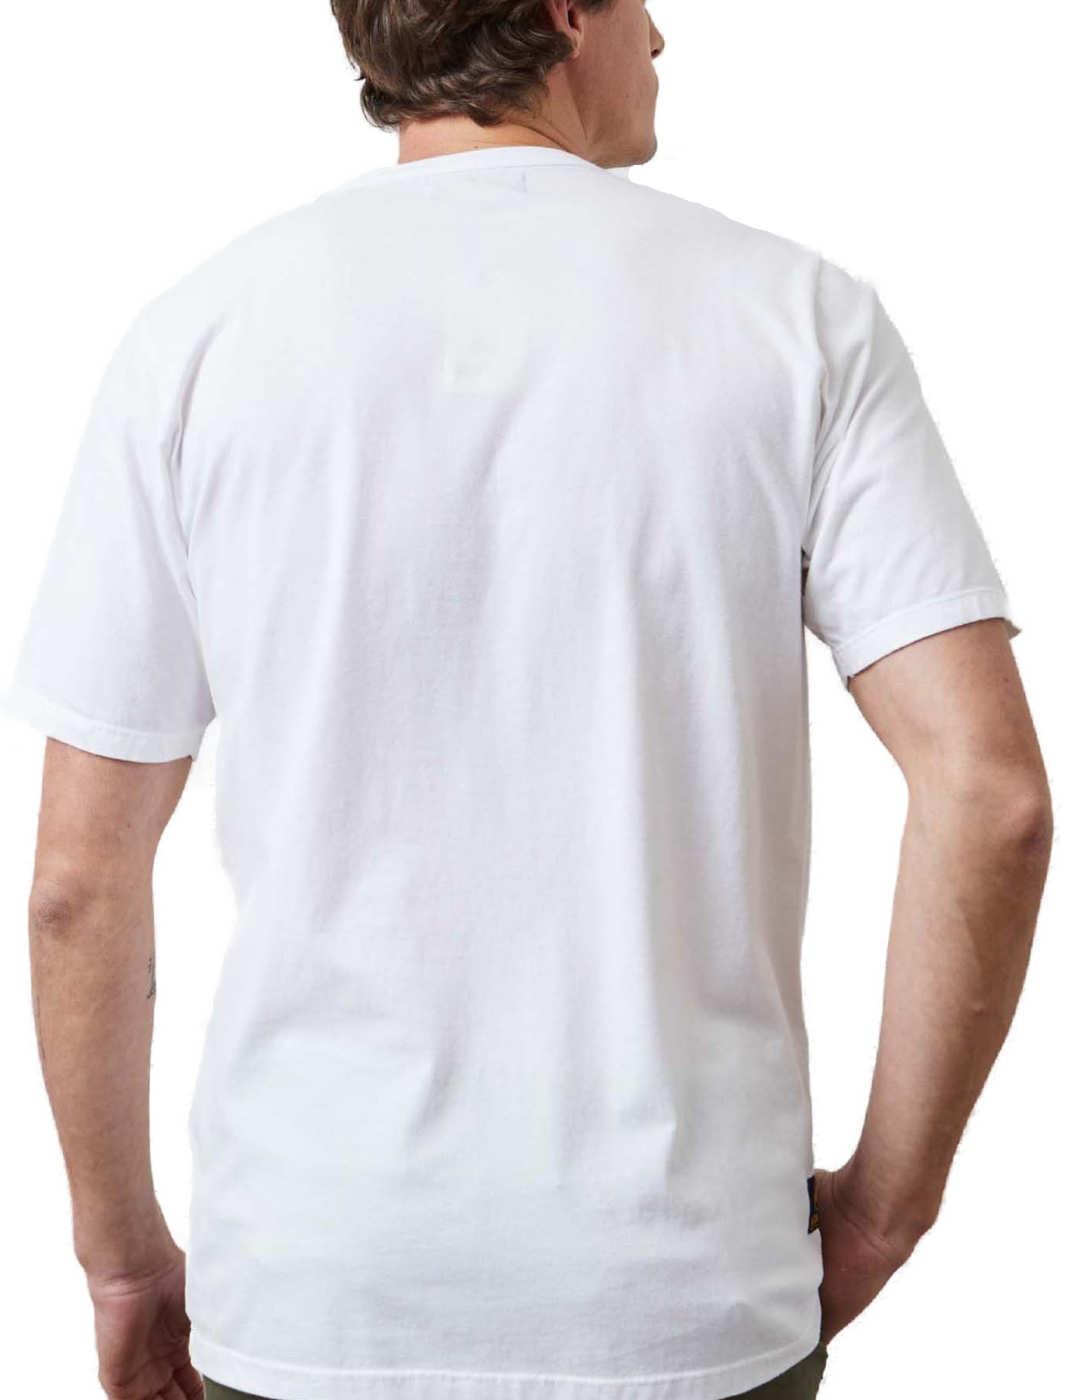 Camiseta Altonadock blanco dibujo serpiente de hombre